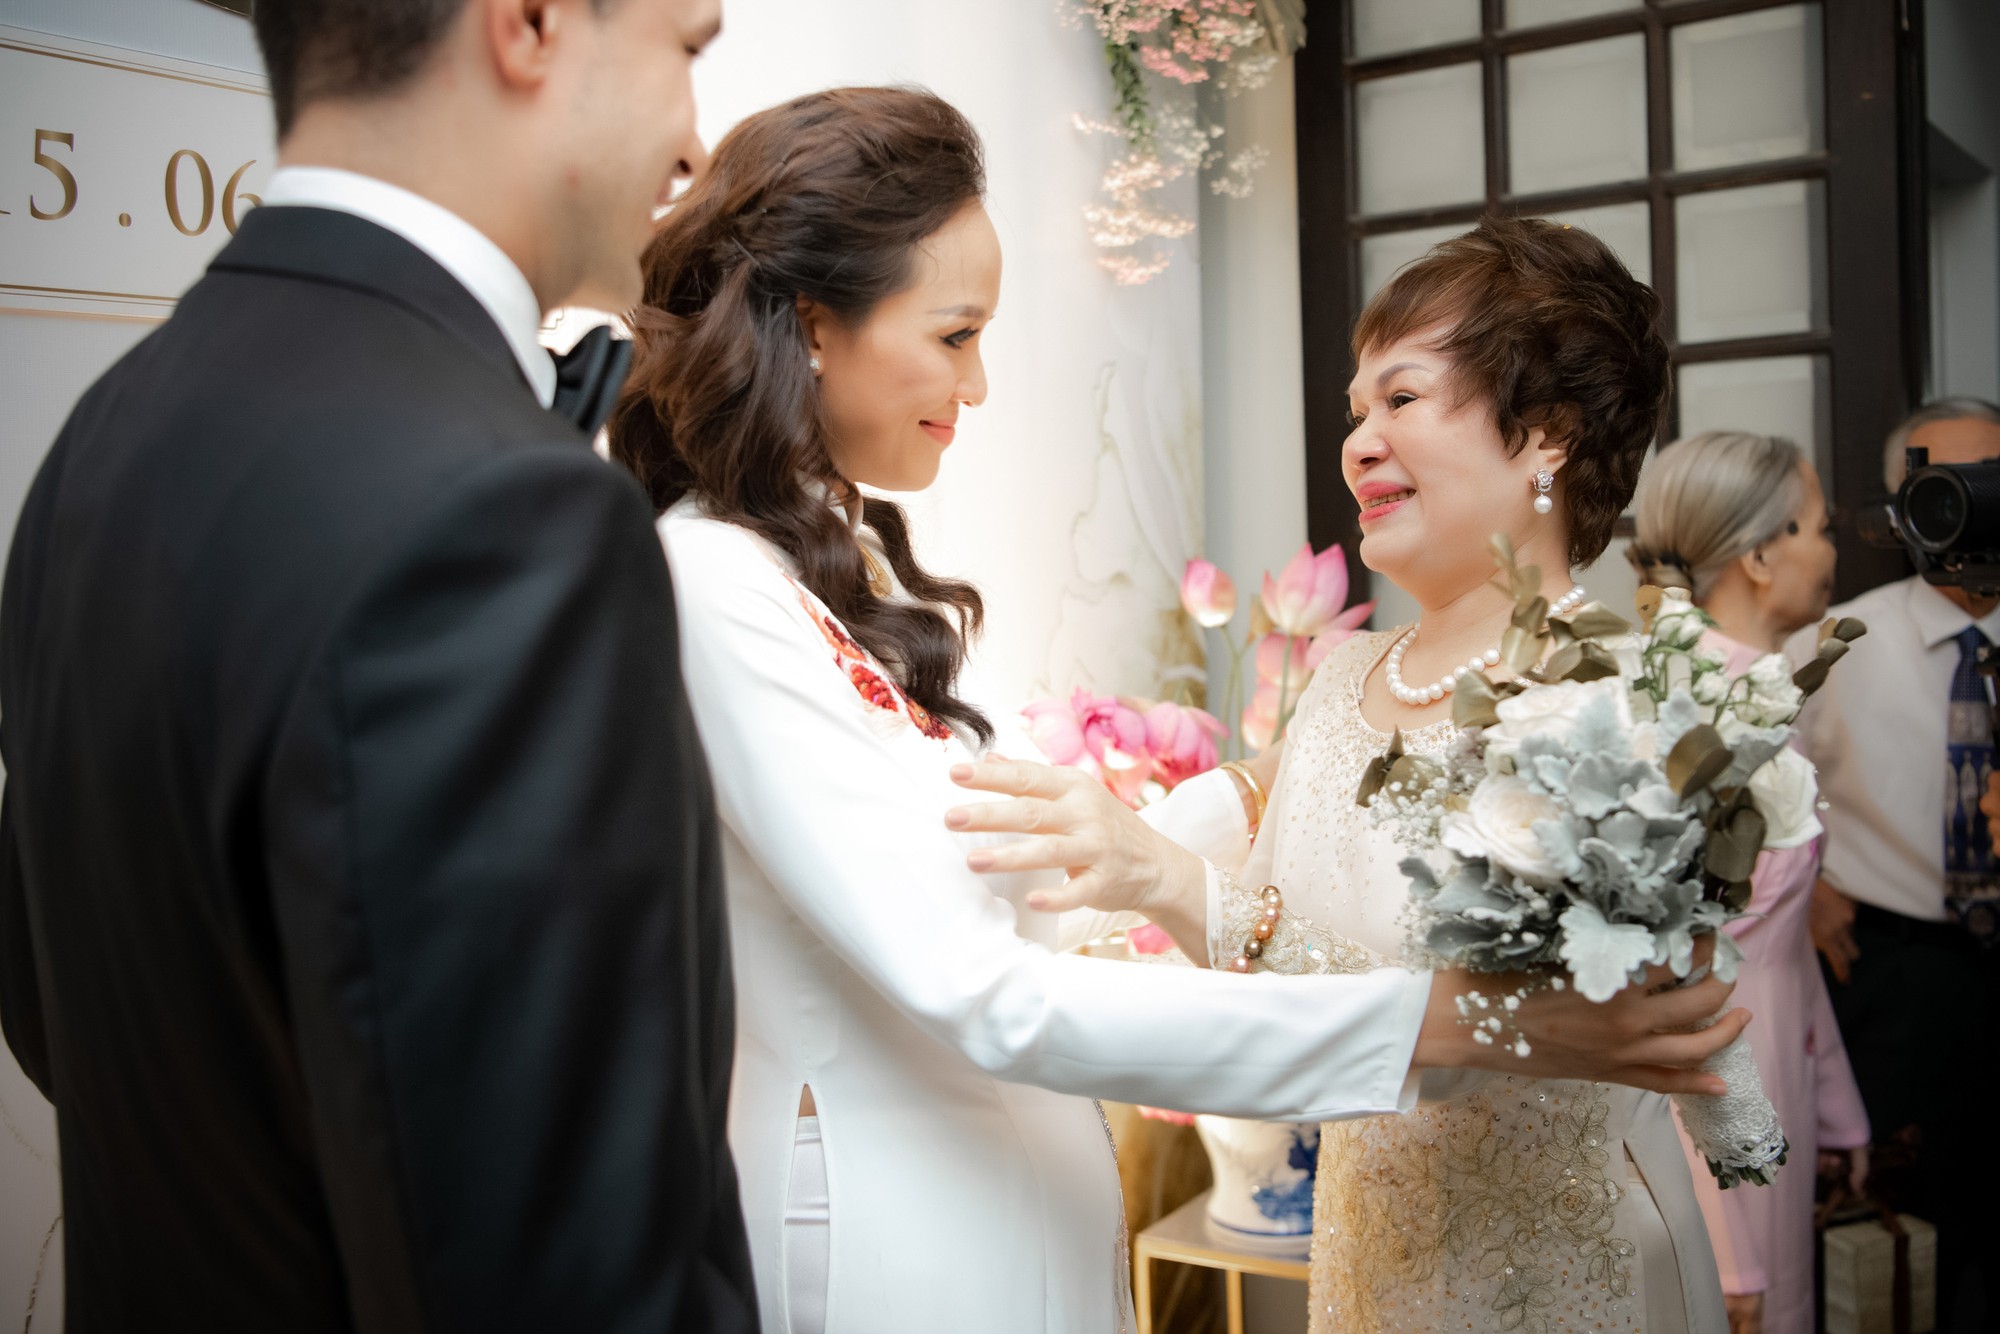 Toàn cảnh lễ đón dâu tại nhà phố cổ của siêu mẫu Phương Mai: Chú rể xuất hiện cùng đoàn xe sang, cô dâu òa khóc ôm chặt mẹ ruột  - Ảnh 9.